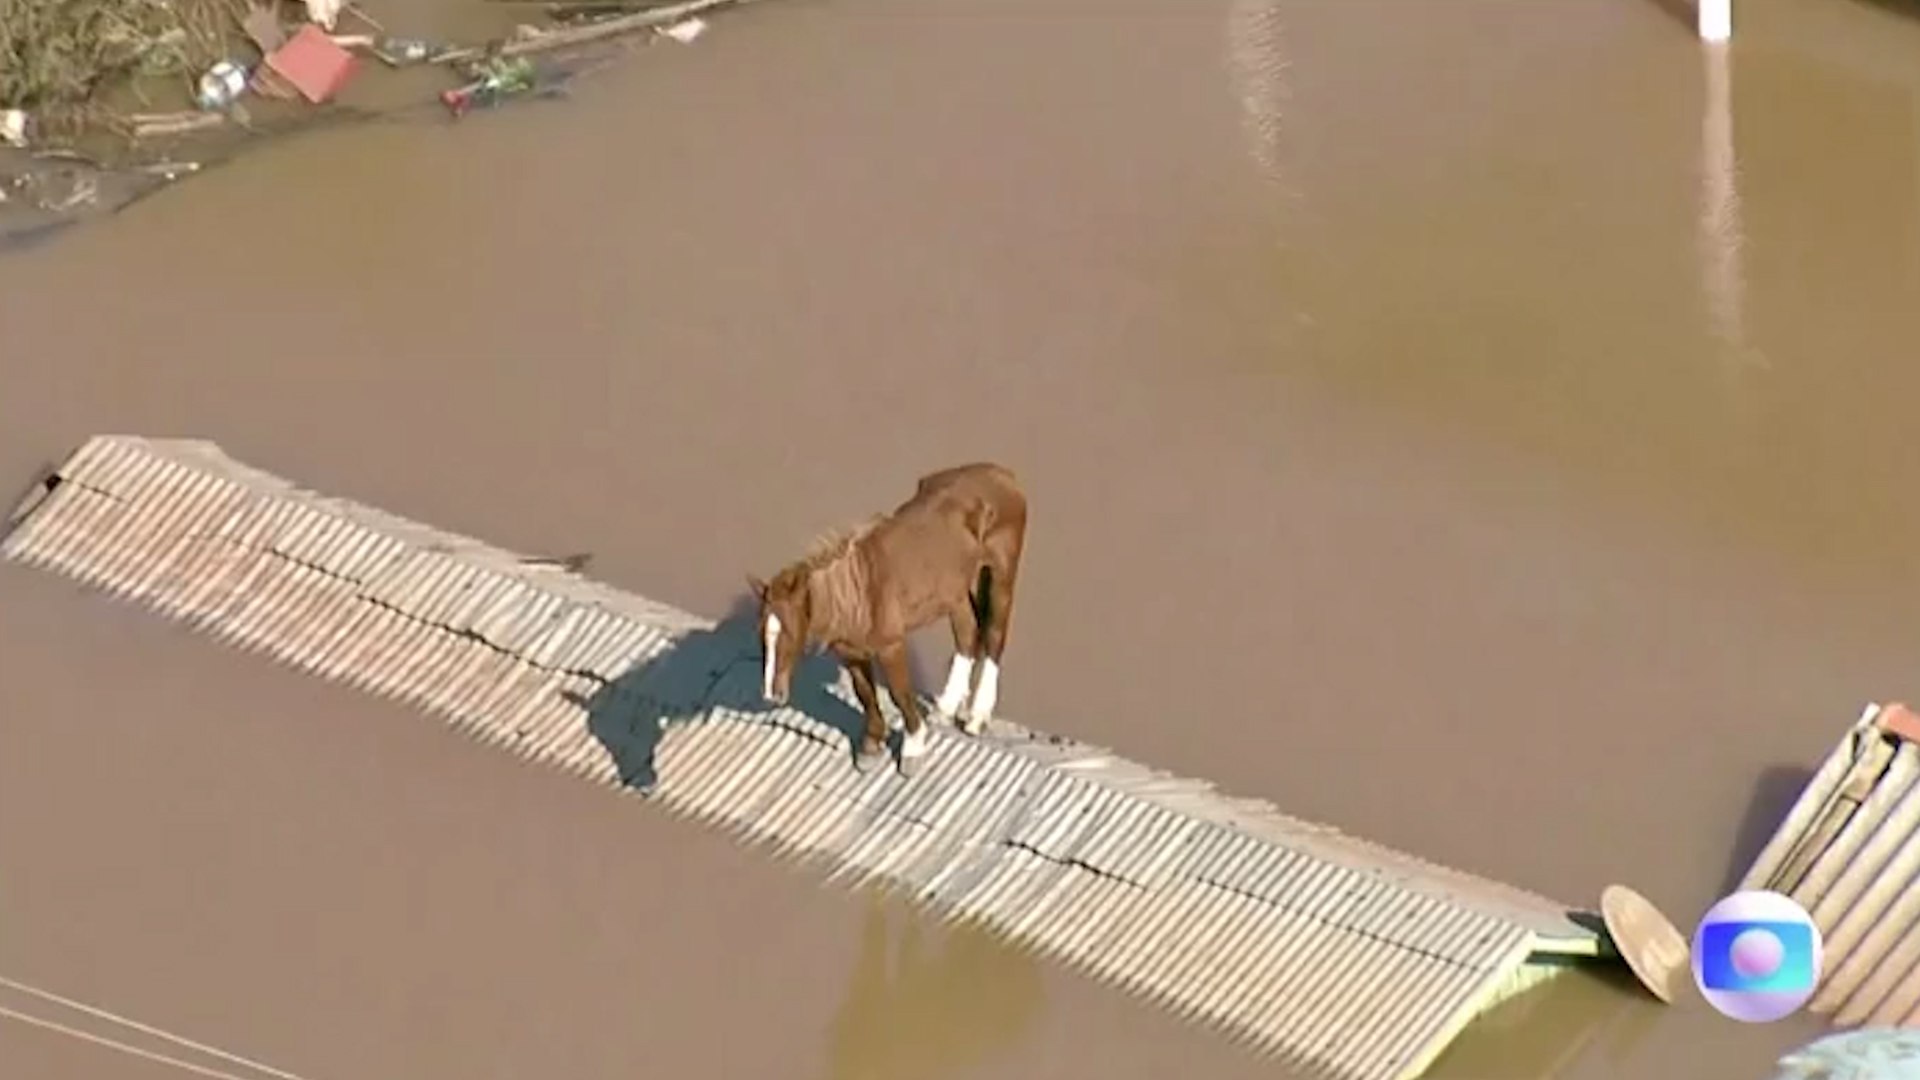 Dramtica imagen de un caballo atrapado sobre un tejado rodeado de agua por las inundaciones en Brasil